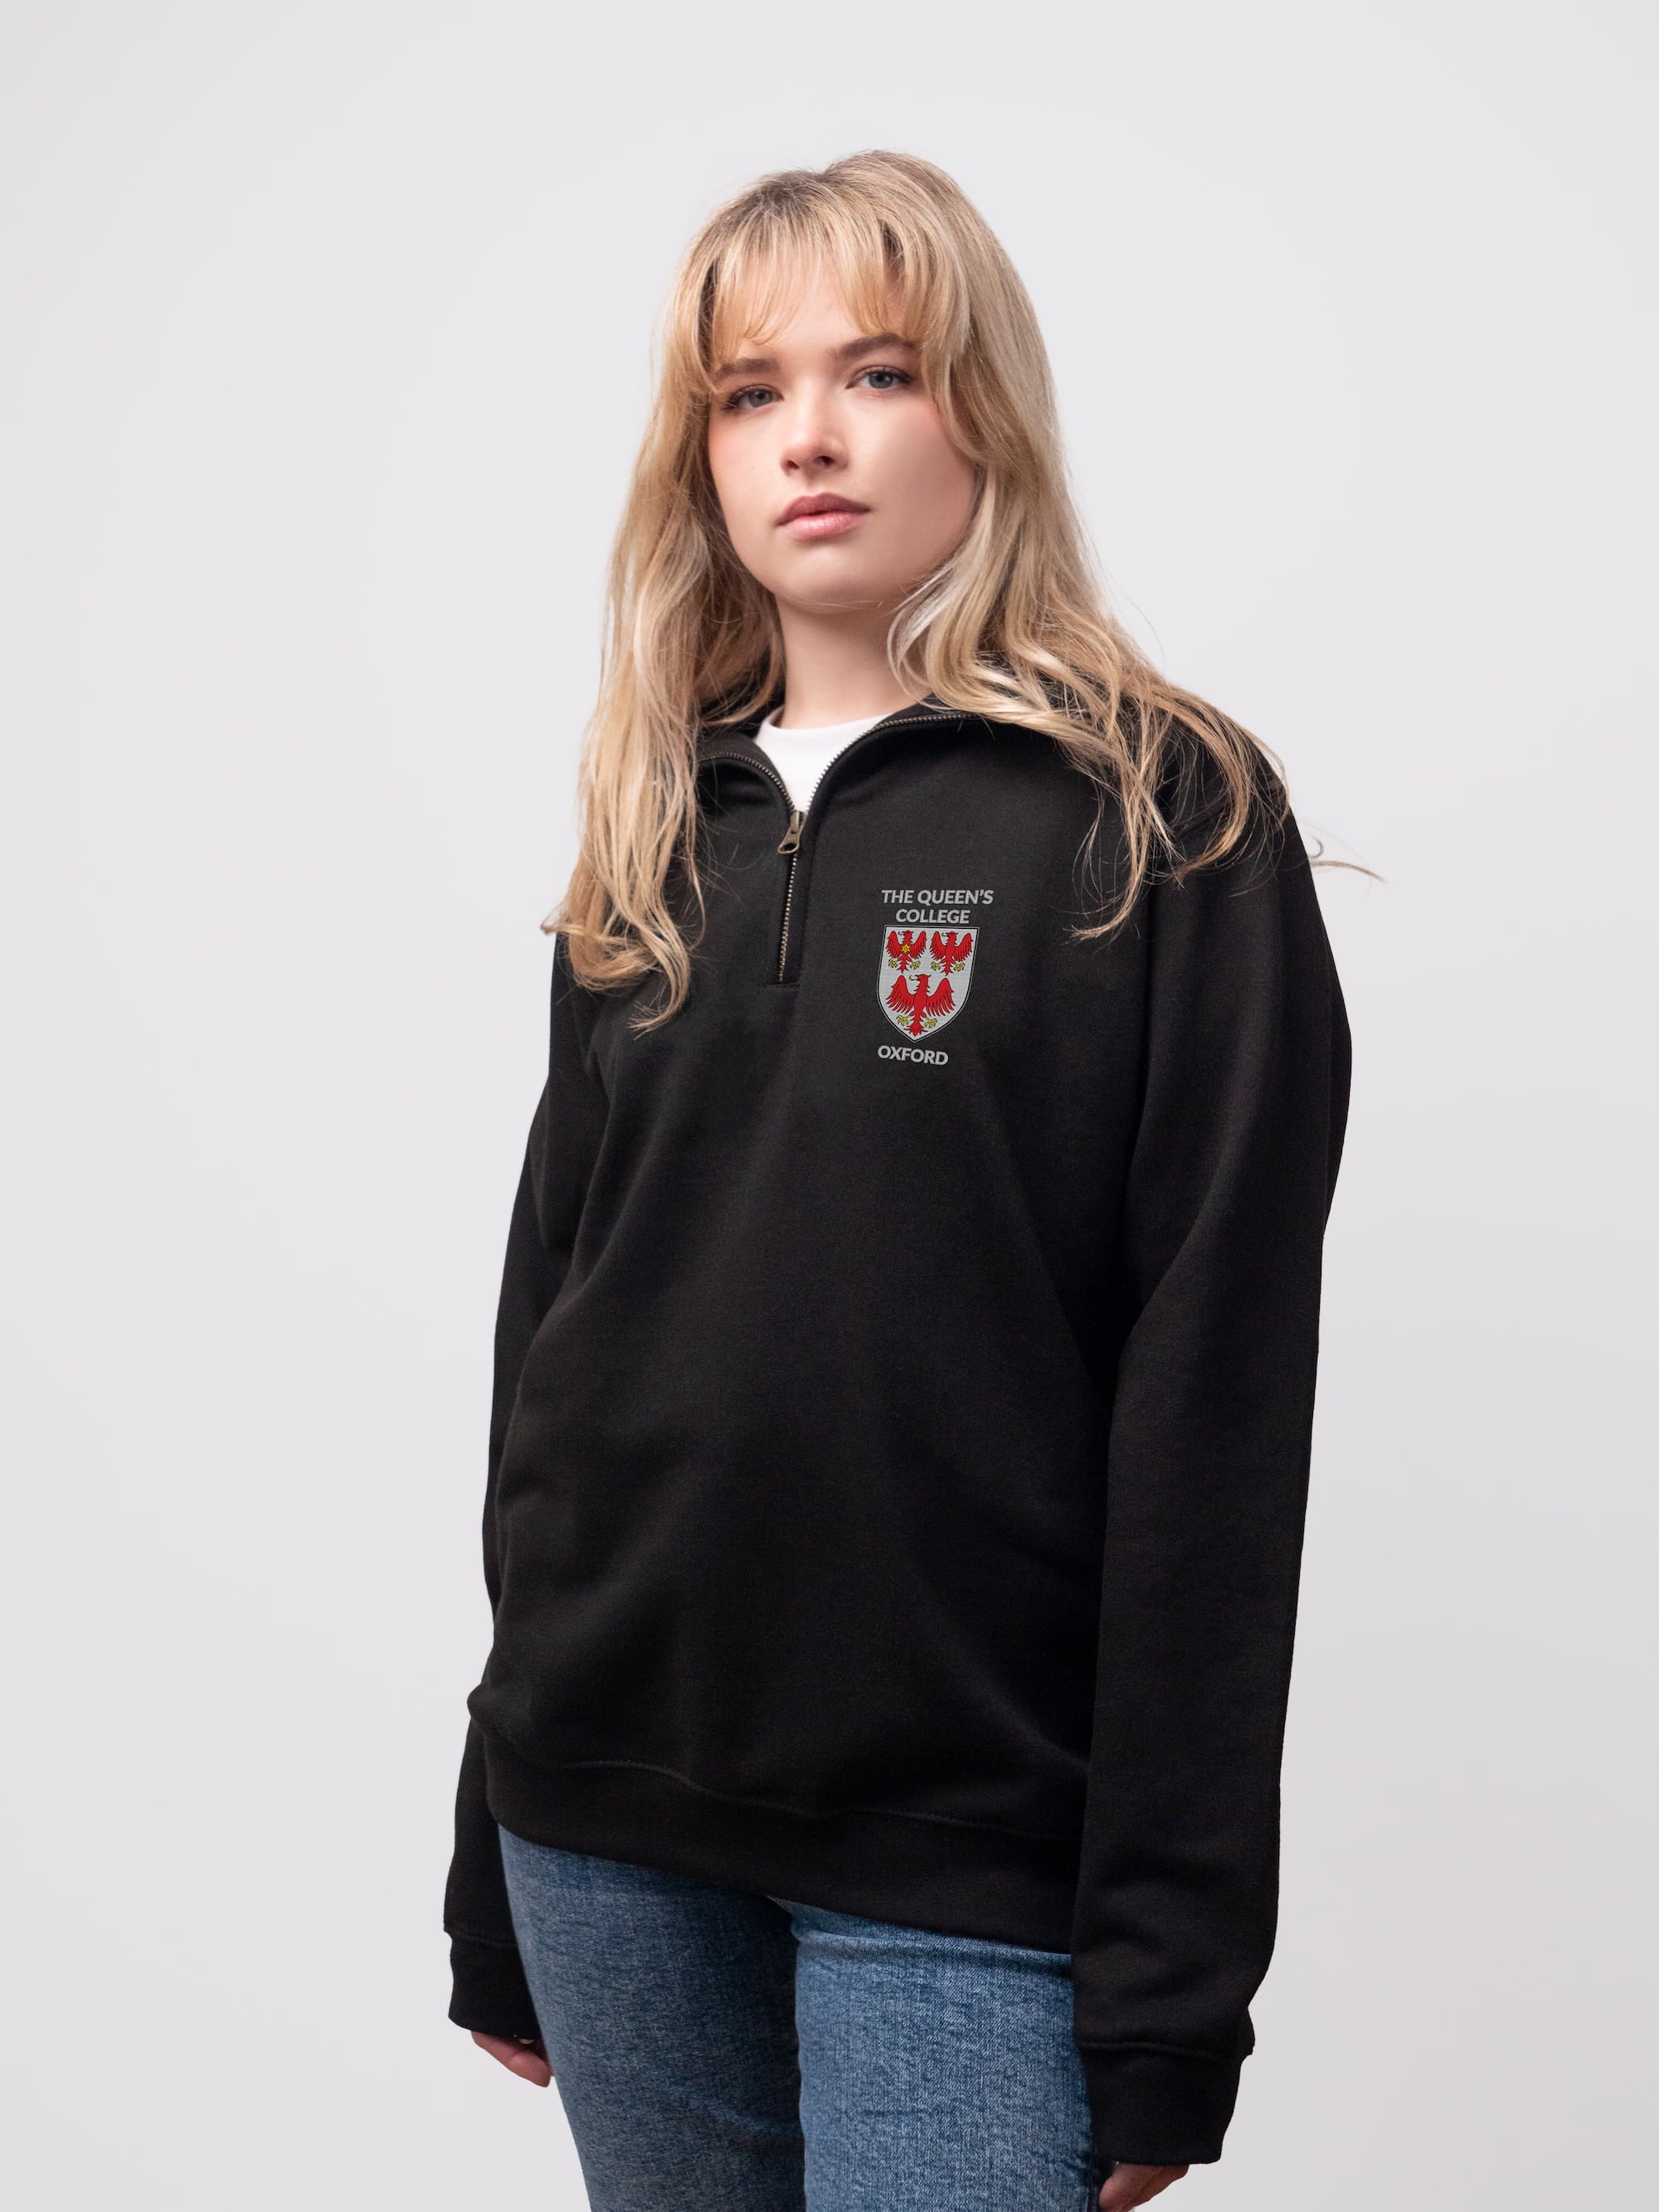 The Queen's student wearing a black 1/4 zip sweatshirt 